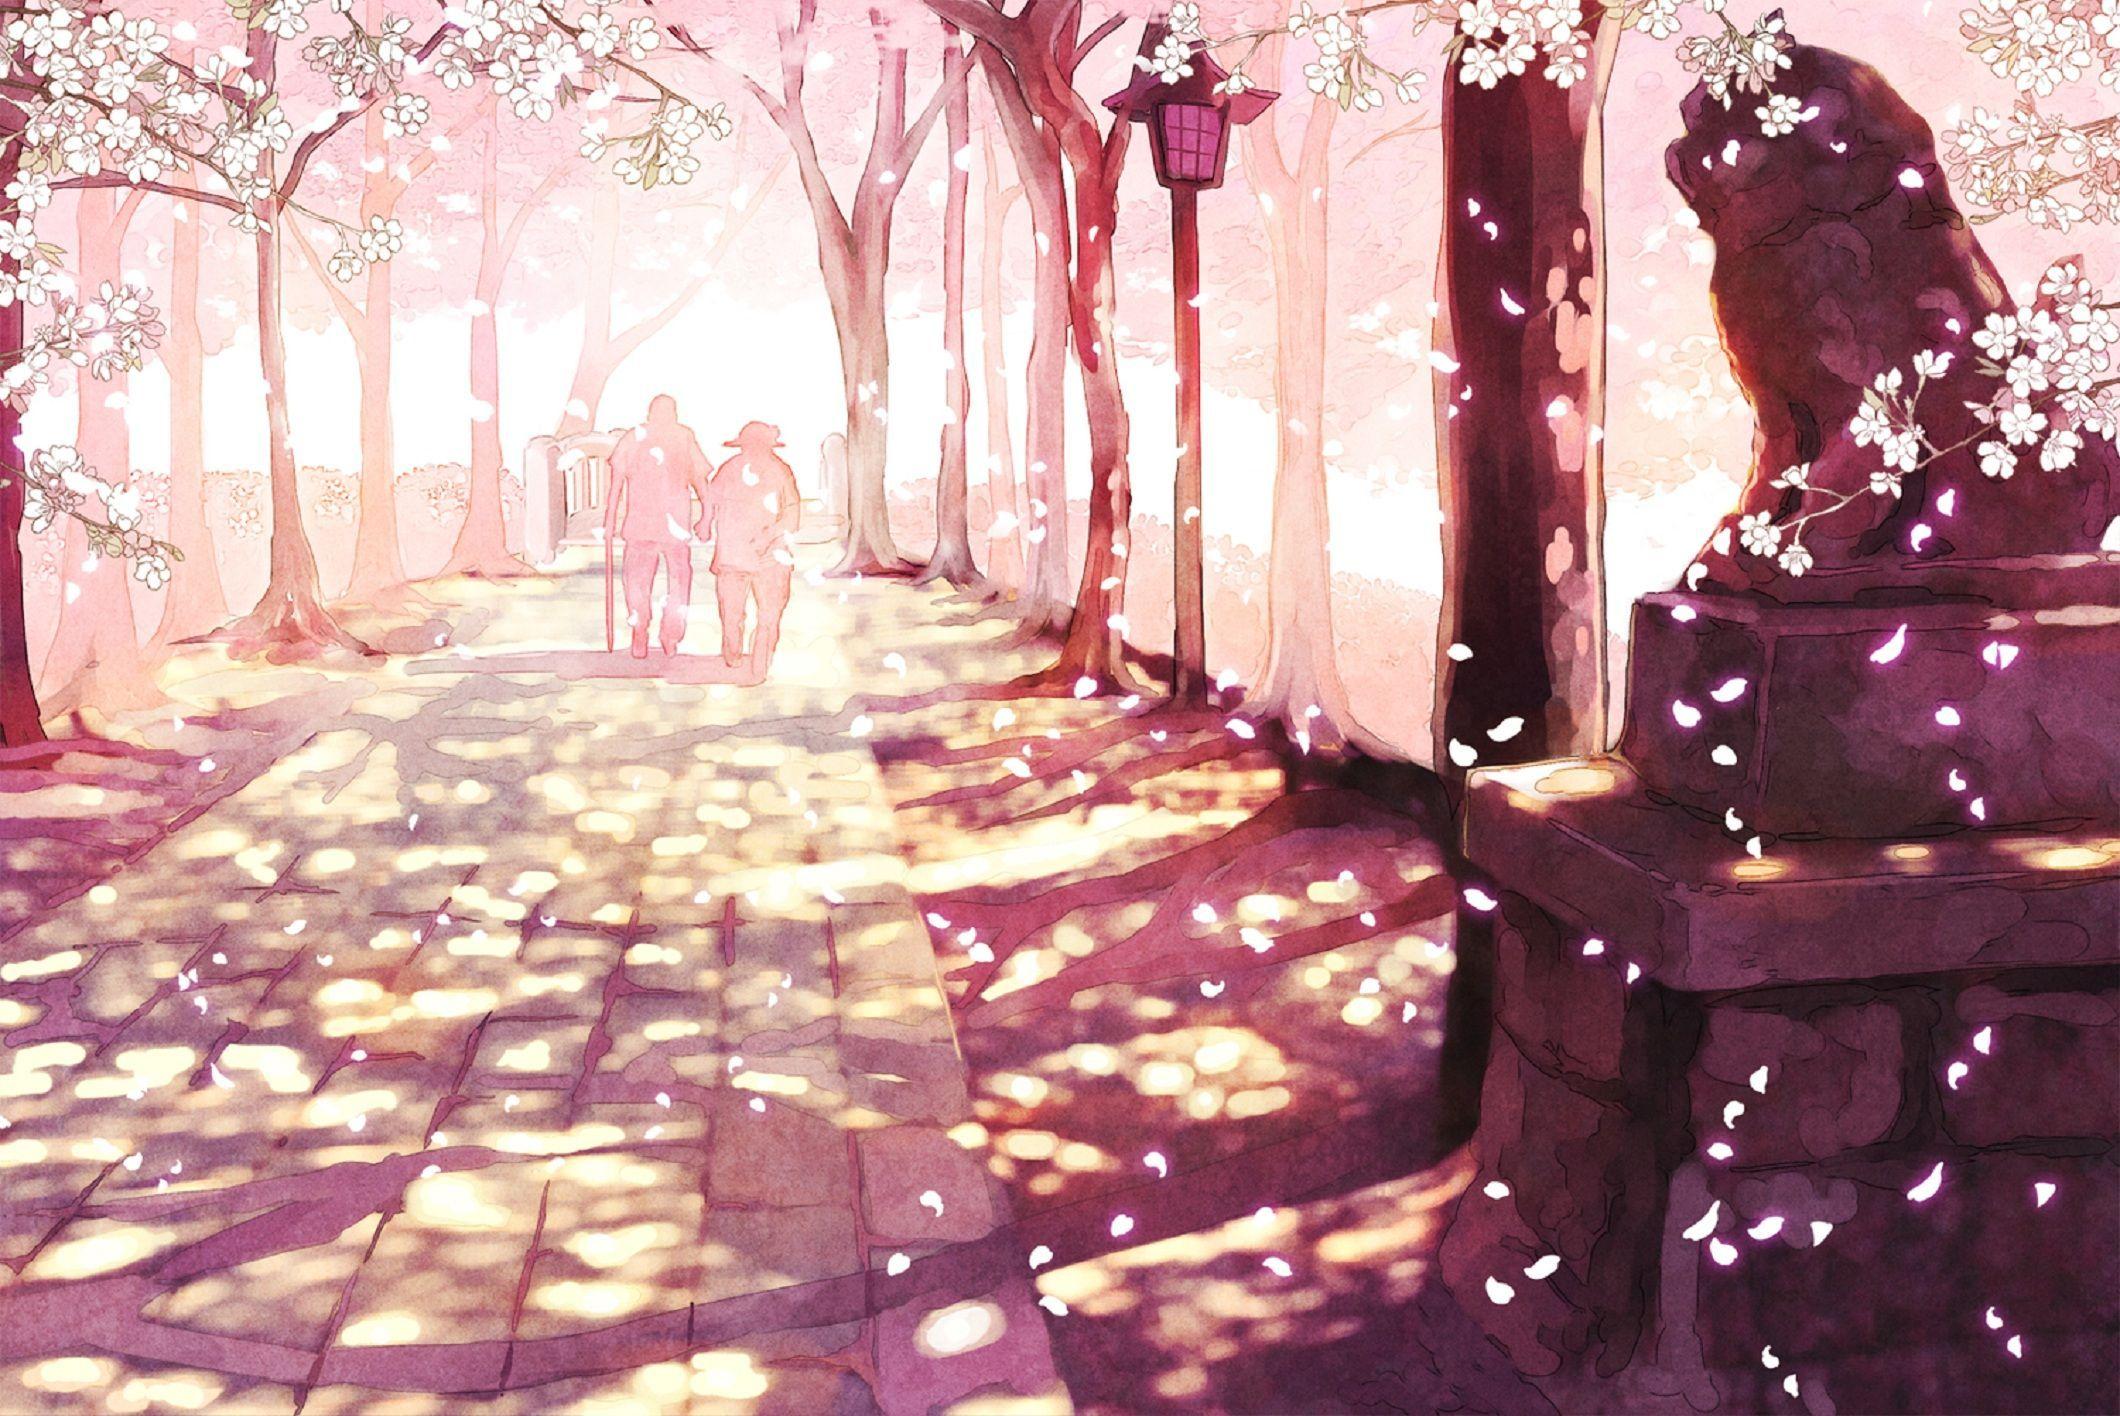 Sakura Anime Scenery Wallpaper Desktop Wallpaper. Anime scenery wallpaper, Anime background wallpaper, Anime scenery